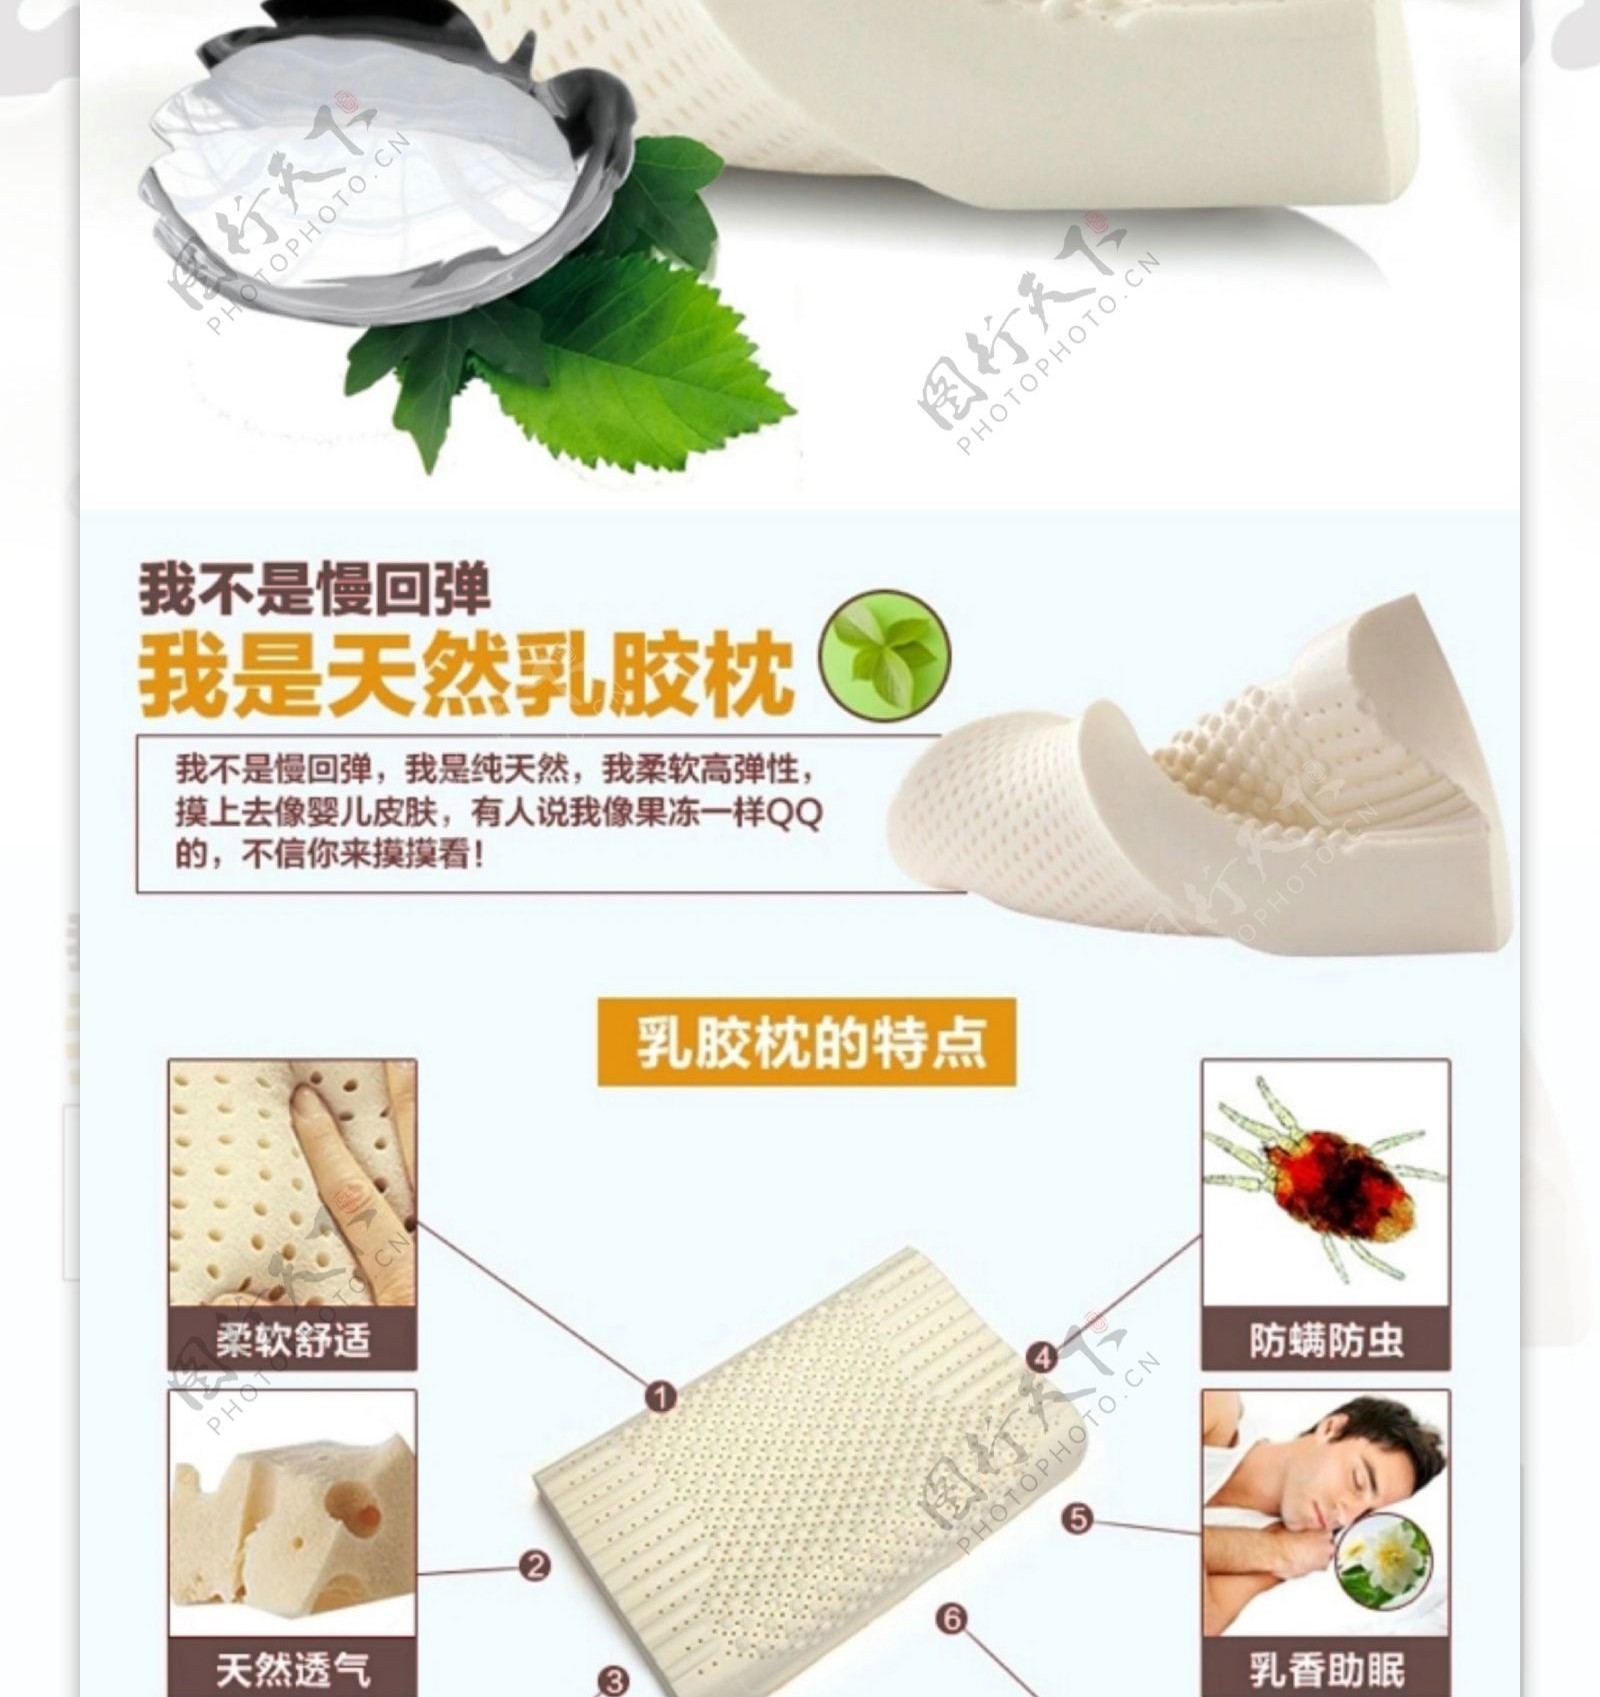 天然乳胶枕头产品详情页设计